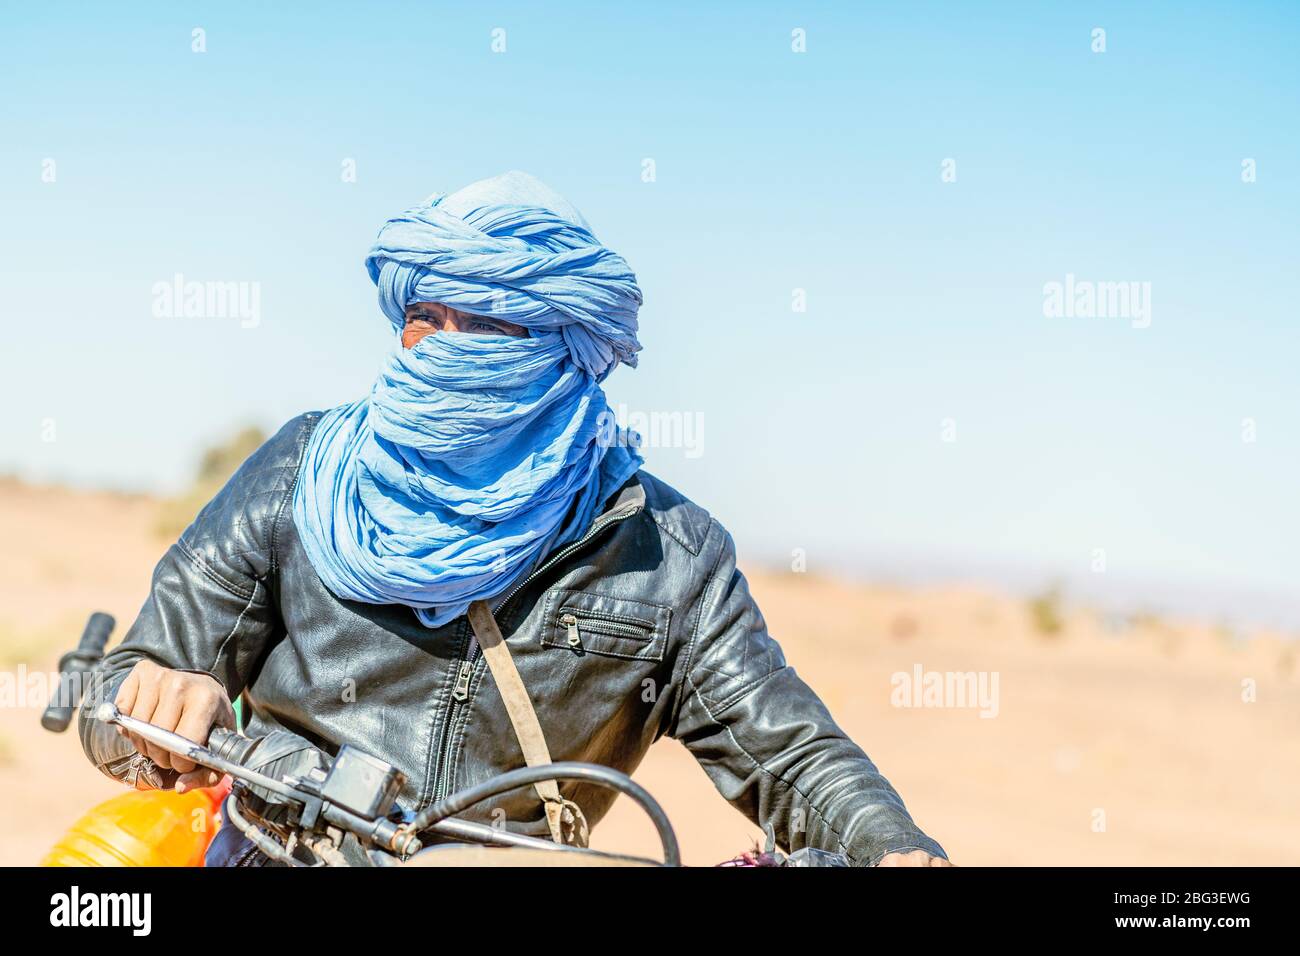 Mhamid, Maroc - 17 mars 2020: Un portrait étonnant de l'homme bédouin sur sa moto qui traverse le désert du Sahara. Banque D'Images